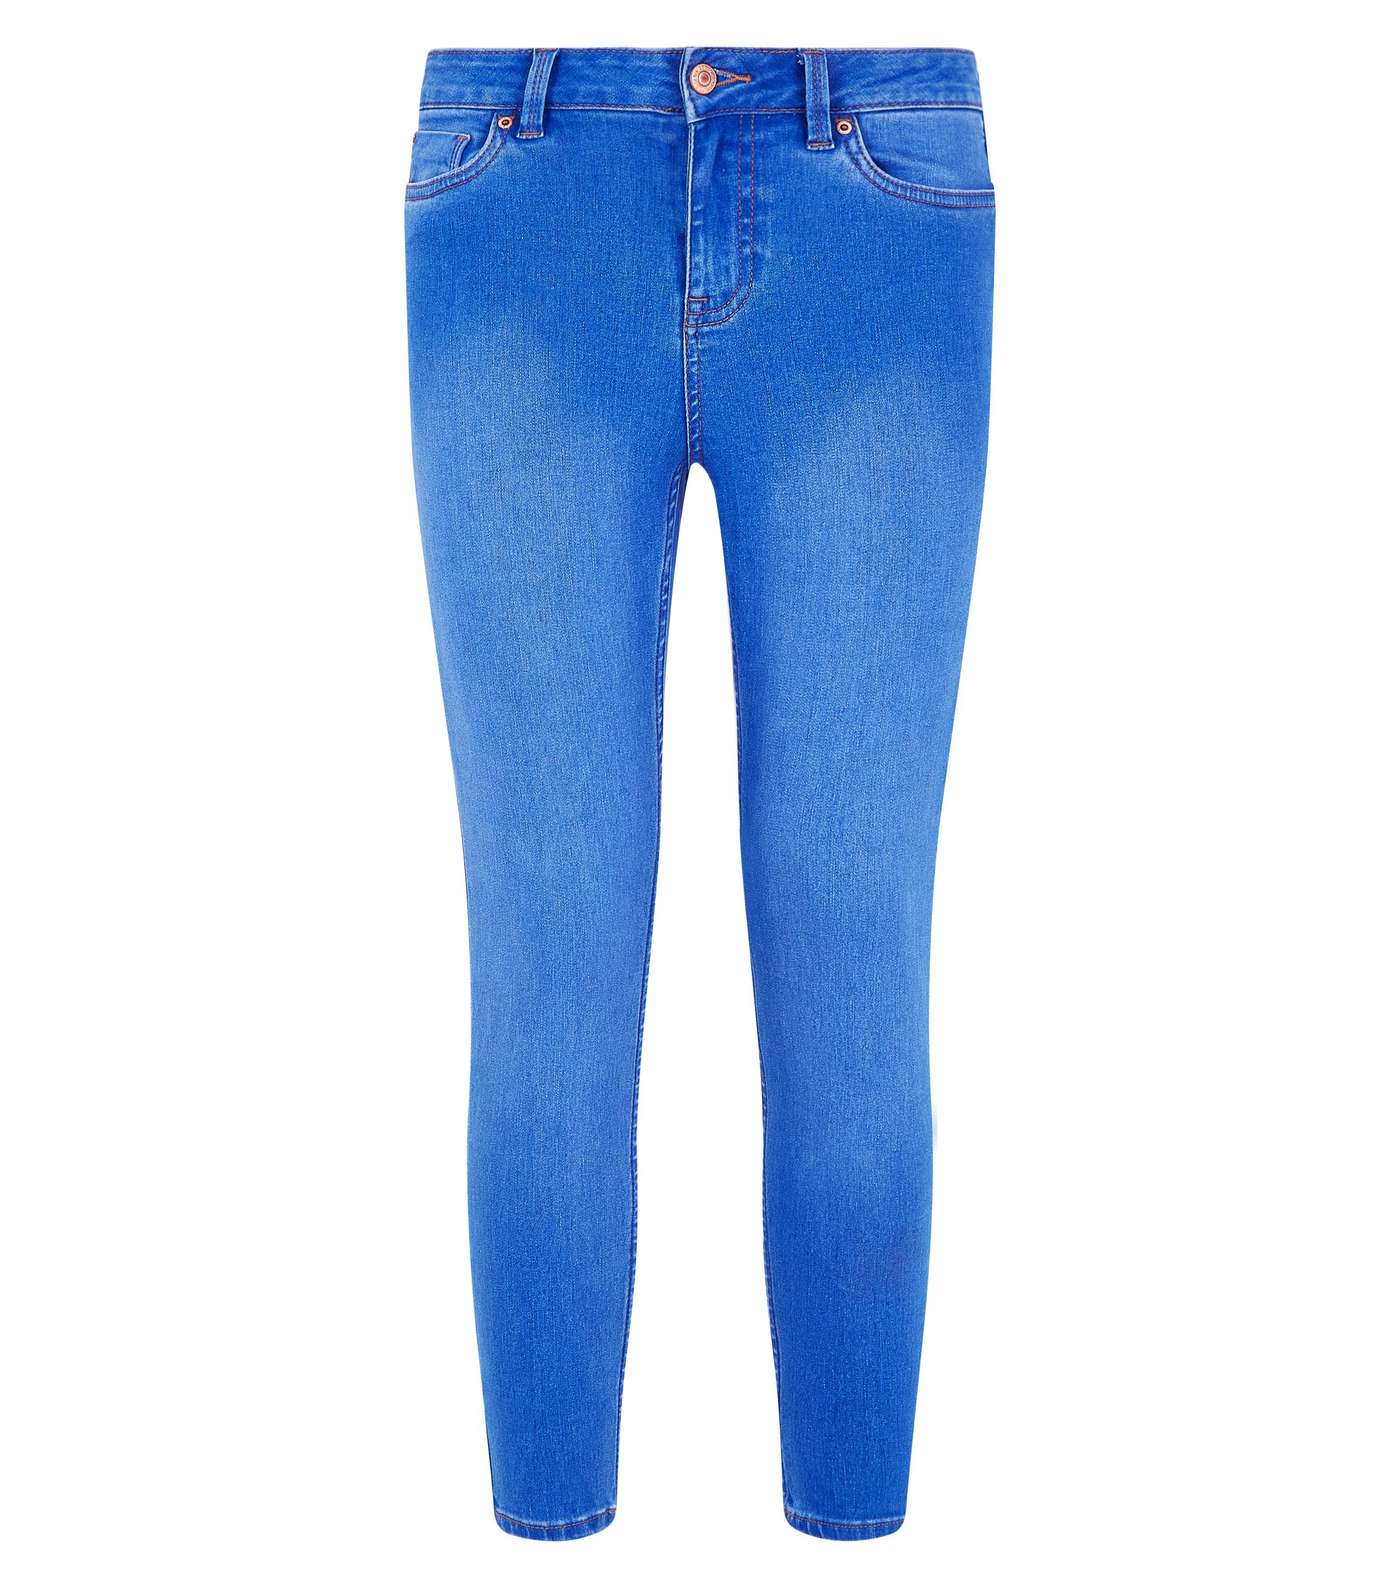 Petite Bright Blue 26in Super Soft Super Skinny Jeans Image 4